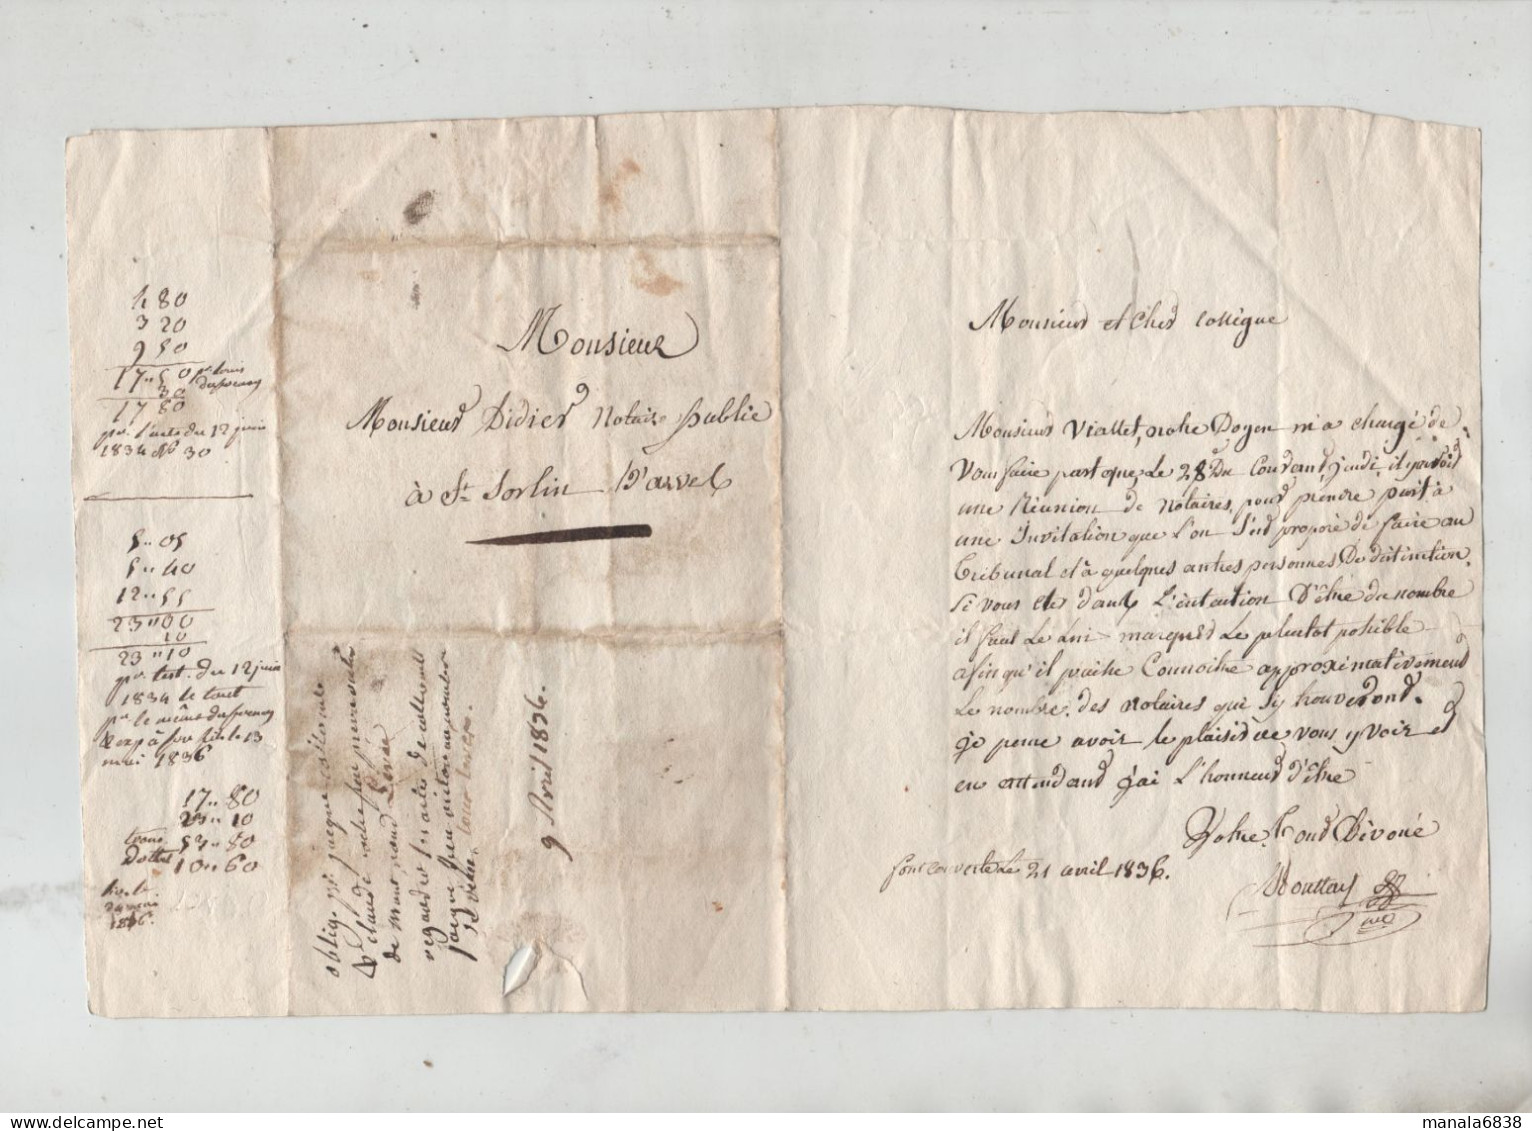 Réunion De Notaires Fontcouverte 1836 Didier Saint Sorlin D'Arves - Manuscripts